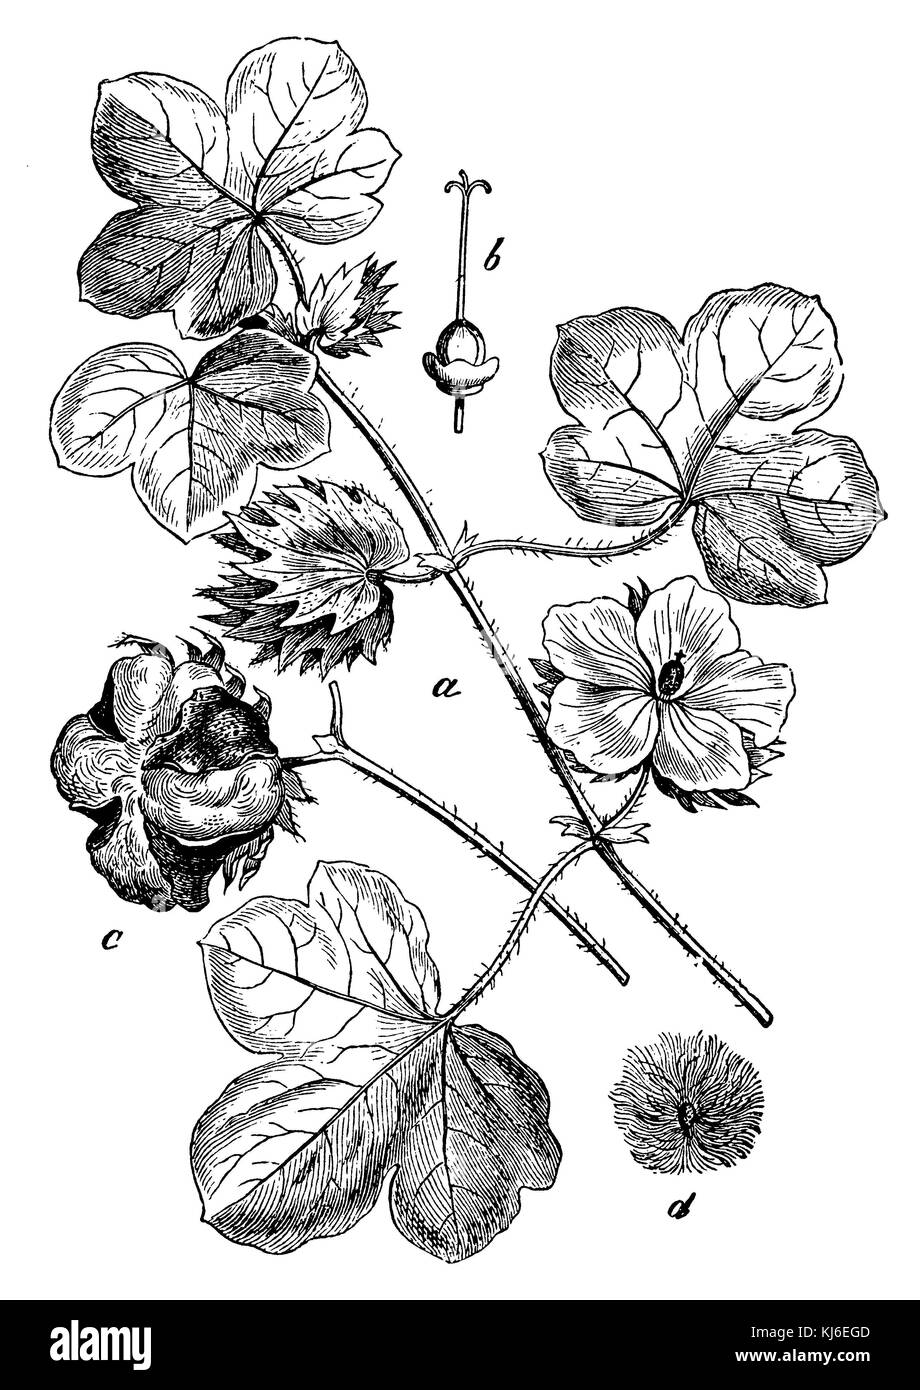 Le coton (Gossypium herbaceum > baumwolle  <une blütenzweig, b stempel mit dem fruchtknoten aufgesprungene kapselfrucht, c, d même mit haaren) Banque D'Images